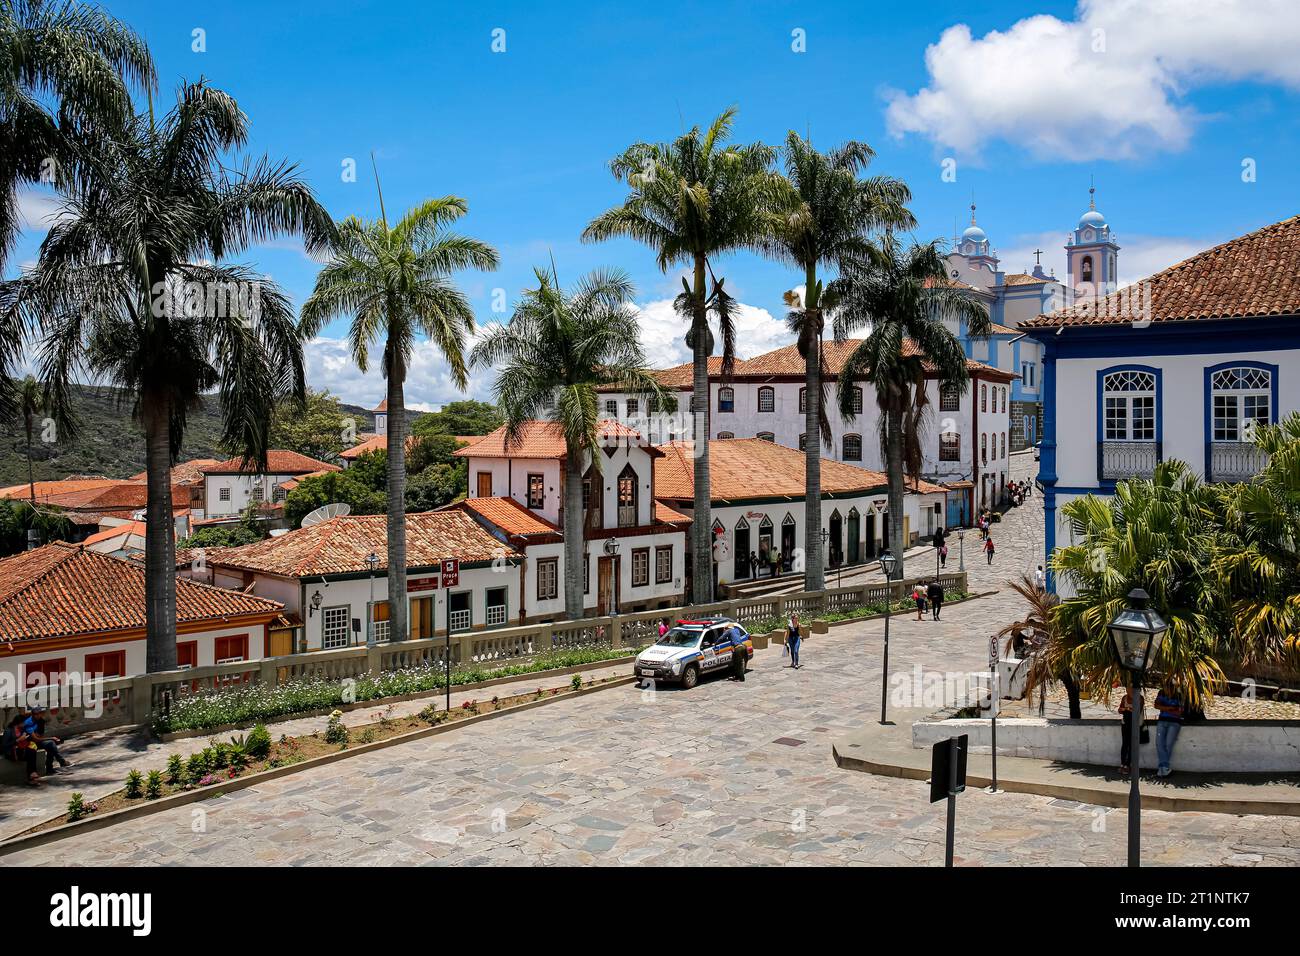 Vue sur les maisons traditionnelles et la rue bordée de palmiers dans le centre historique de Diamantina sur une journée ensoleillée, Minas Gerais, Brésil Banque D'Images